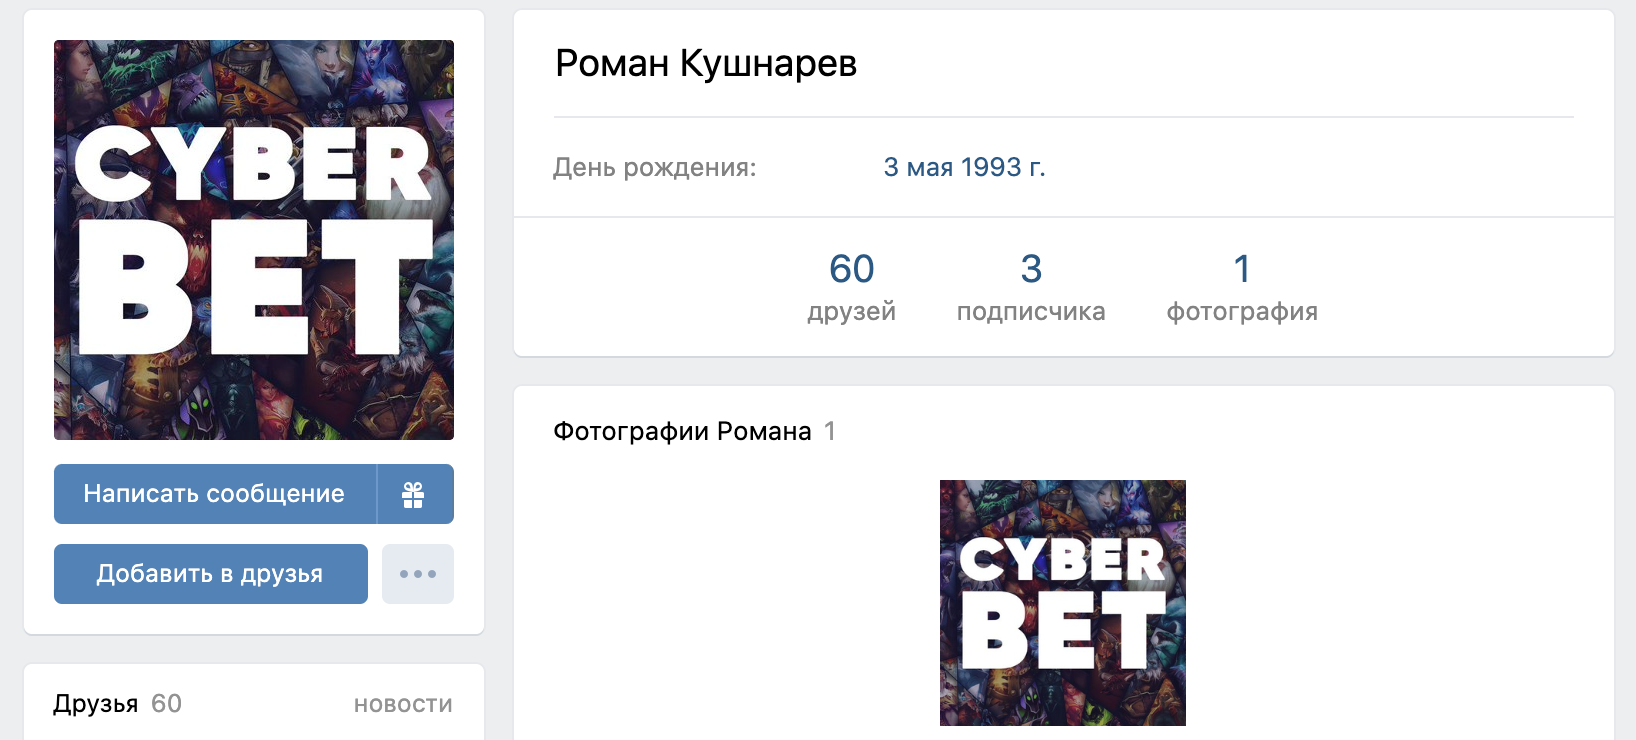 Страница Вконтакте основателя Cyberbet